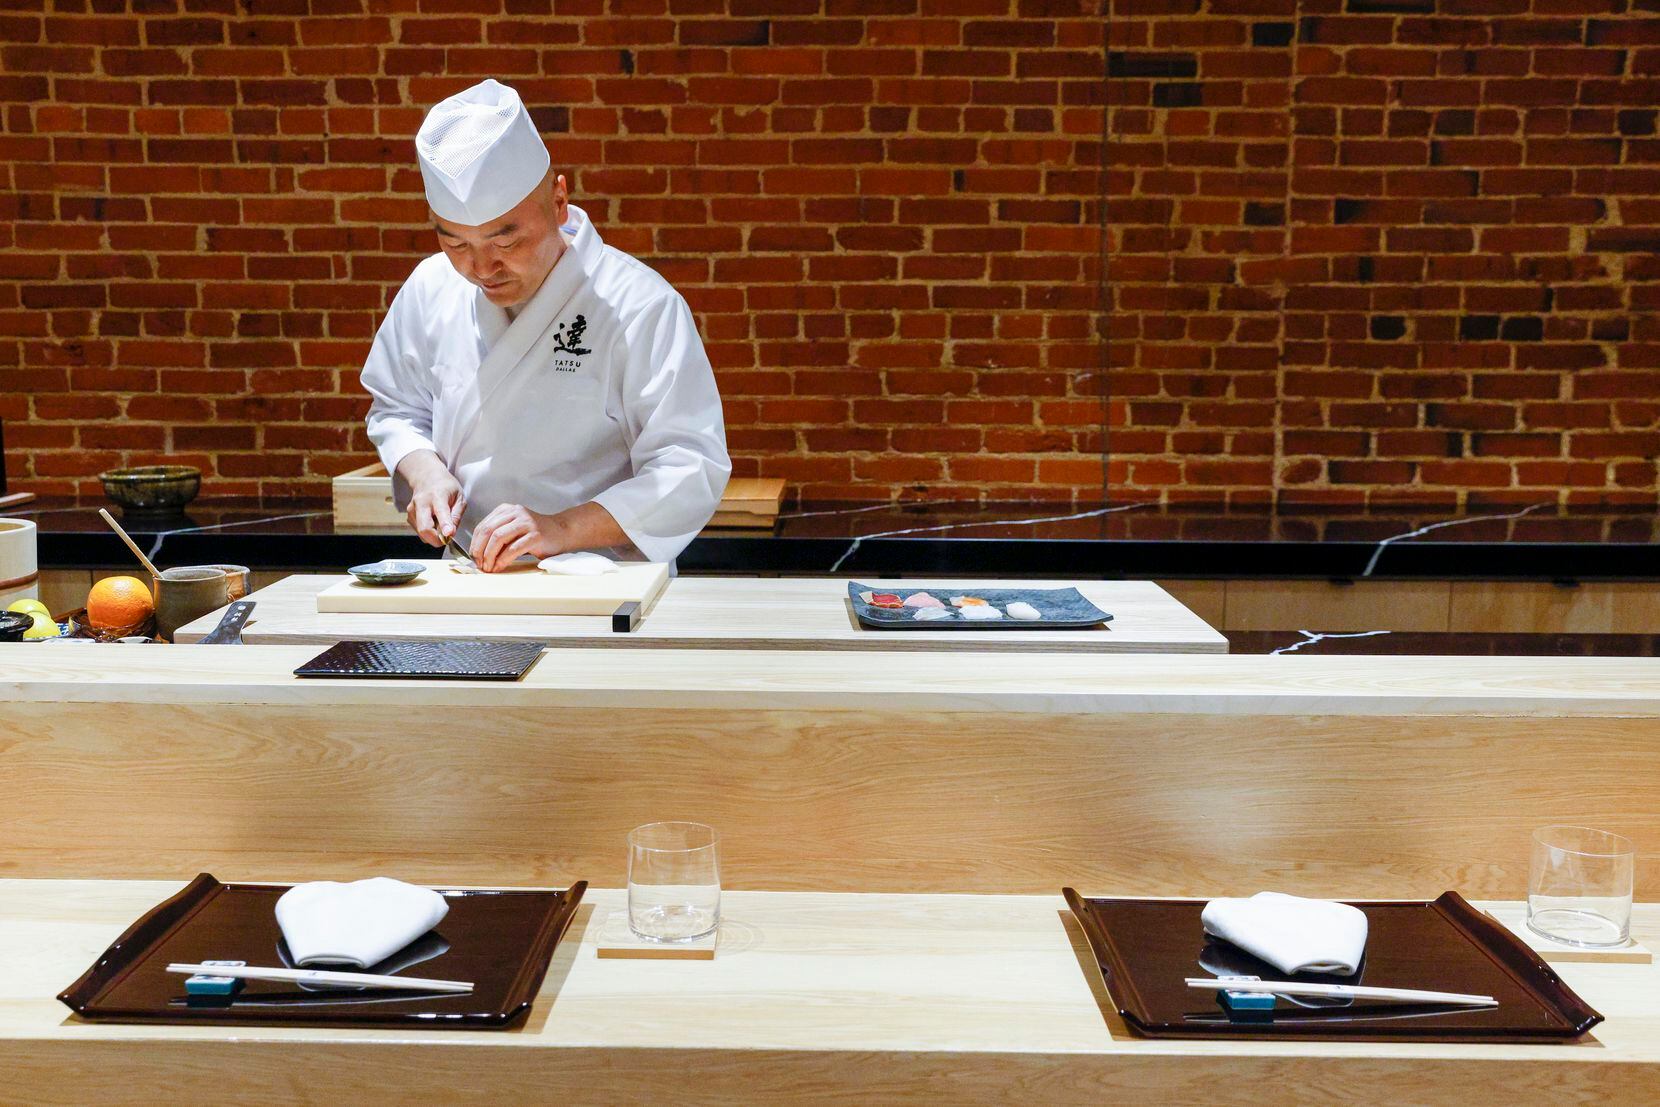 Master sushi chef Tatsuya Sekiguchi prepares sushi at Tatsu in Deep Ellum.